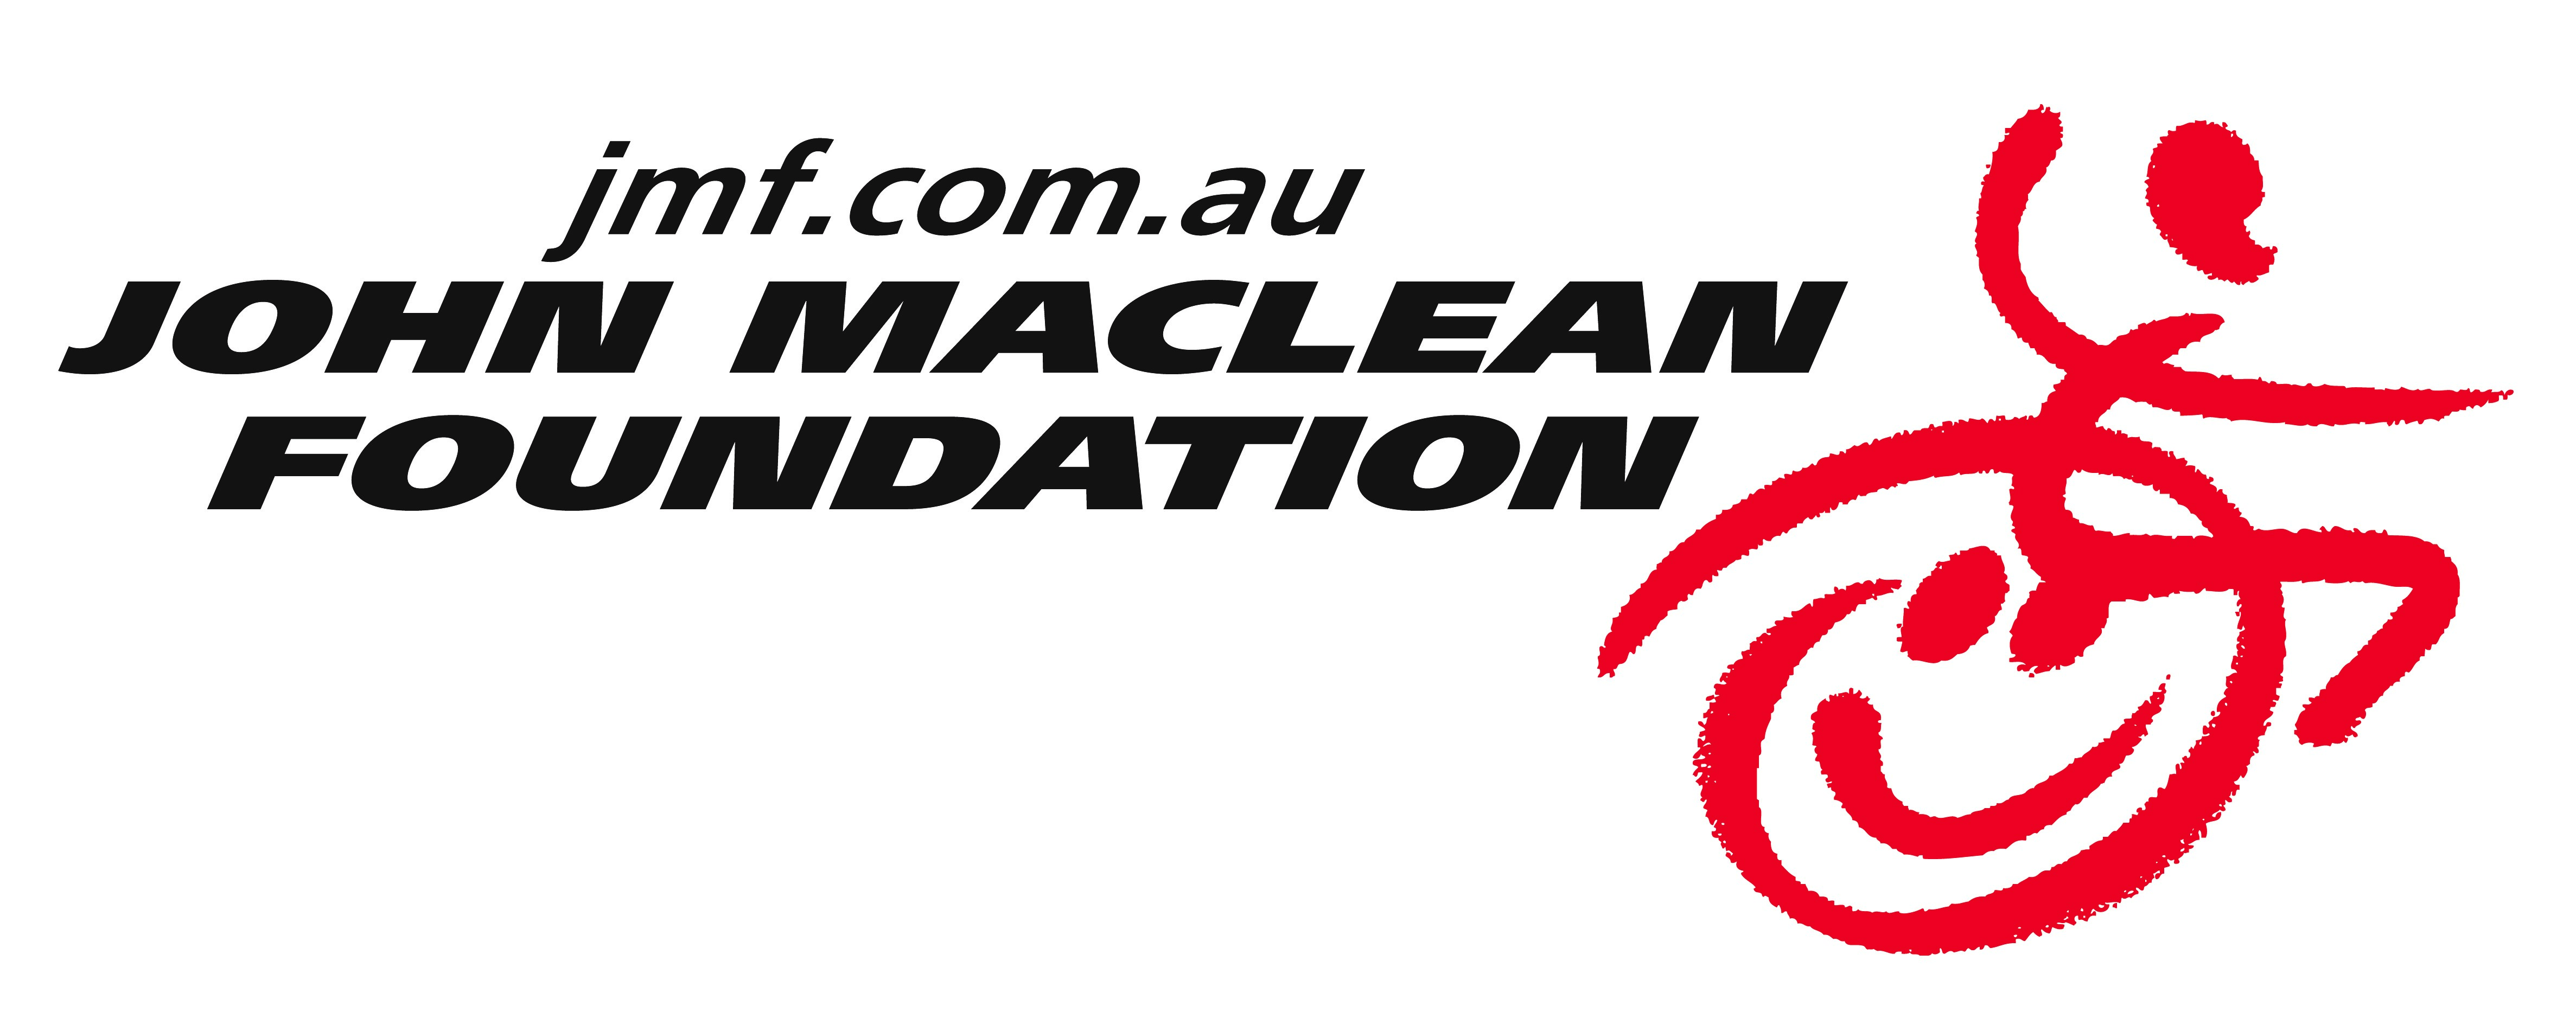 John Maclean Foundation